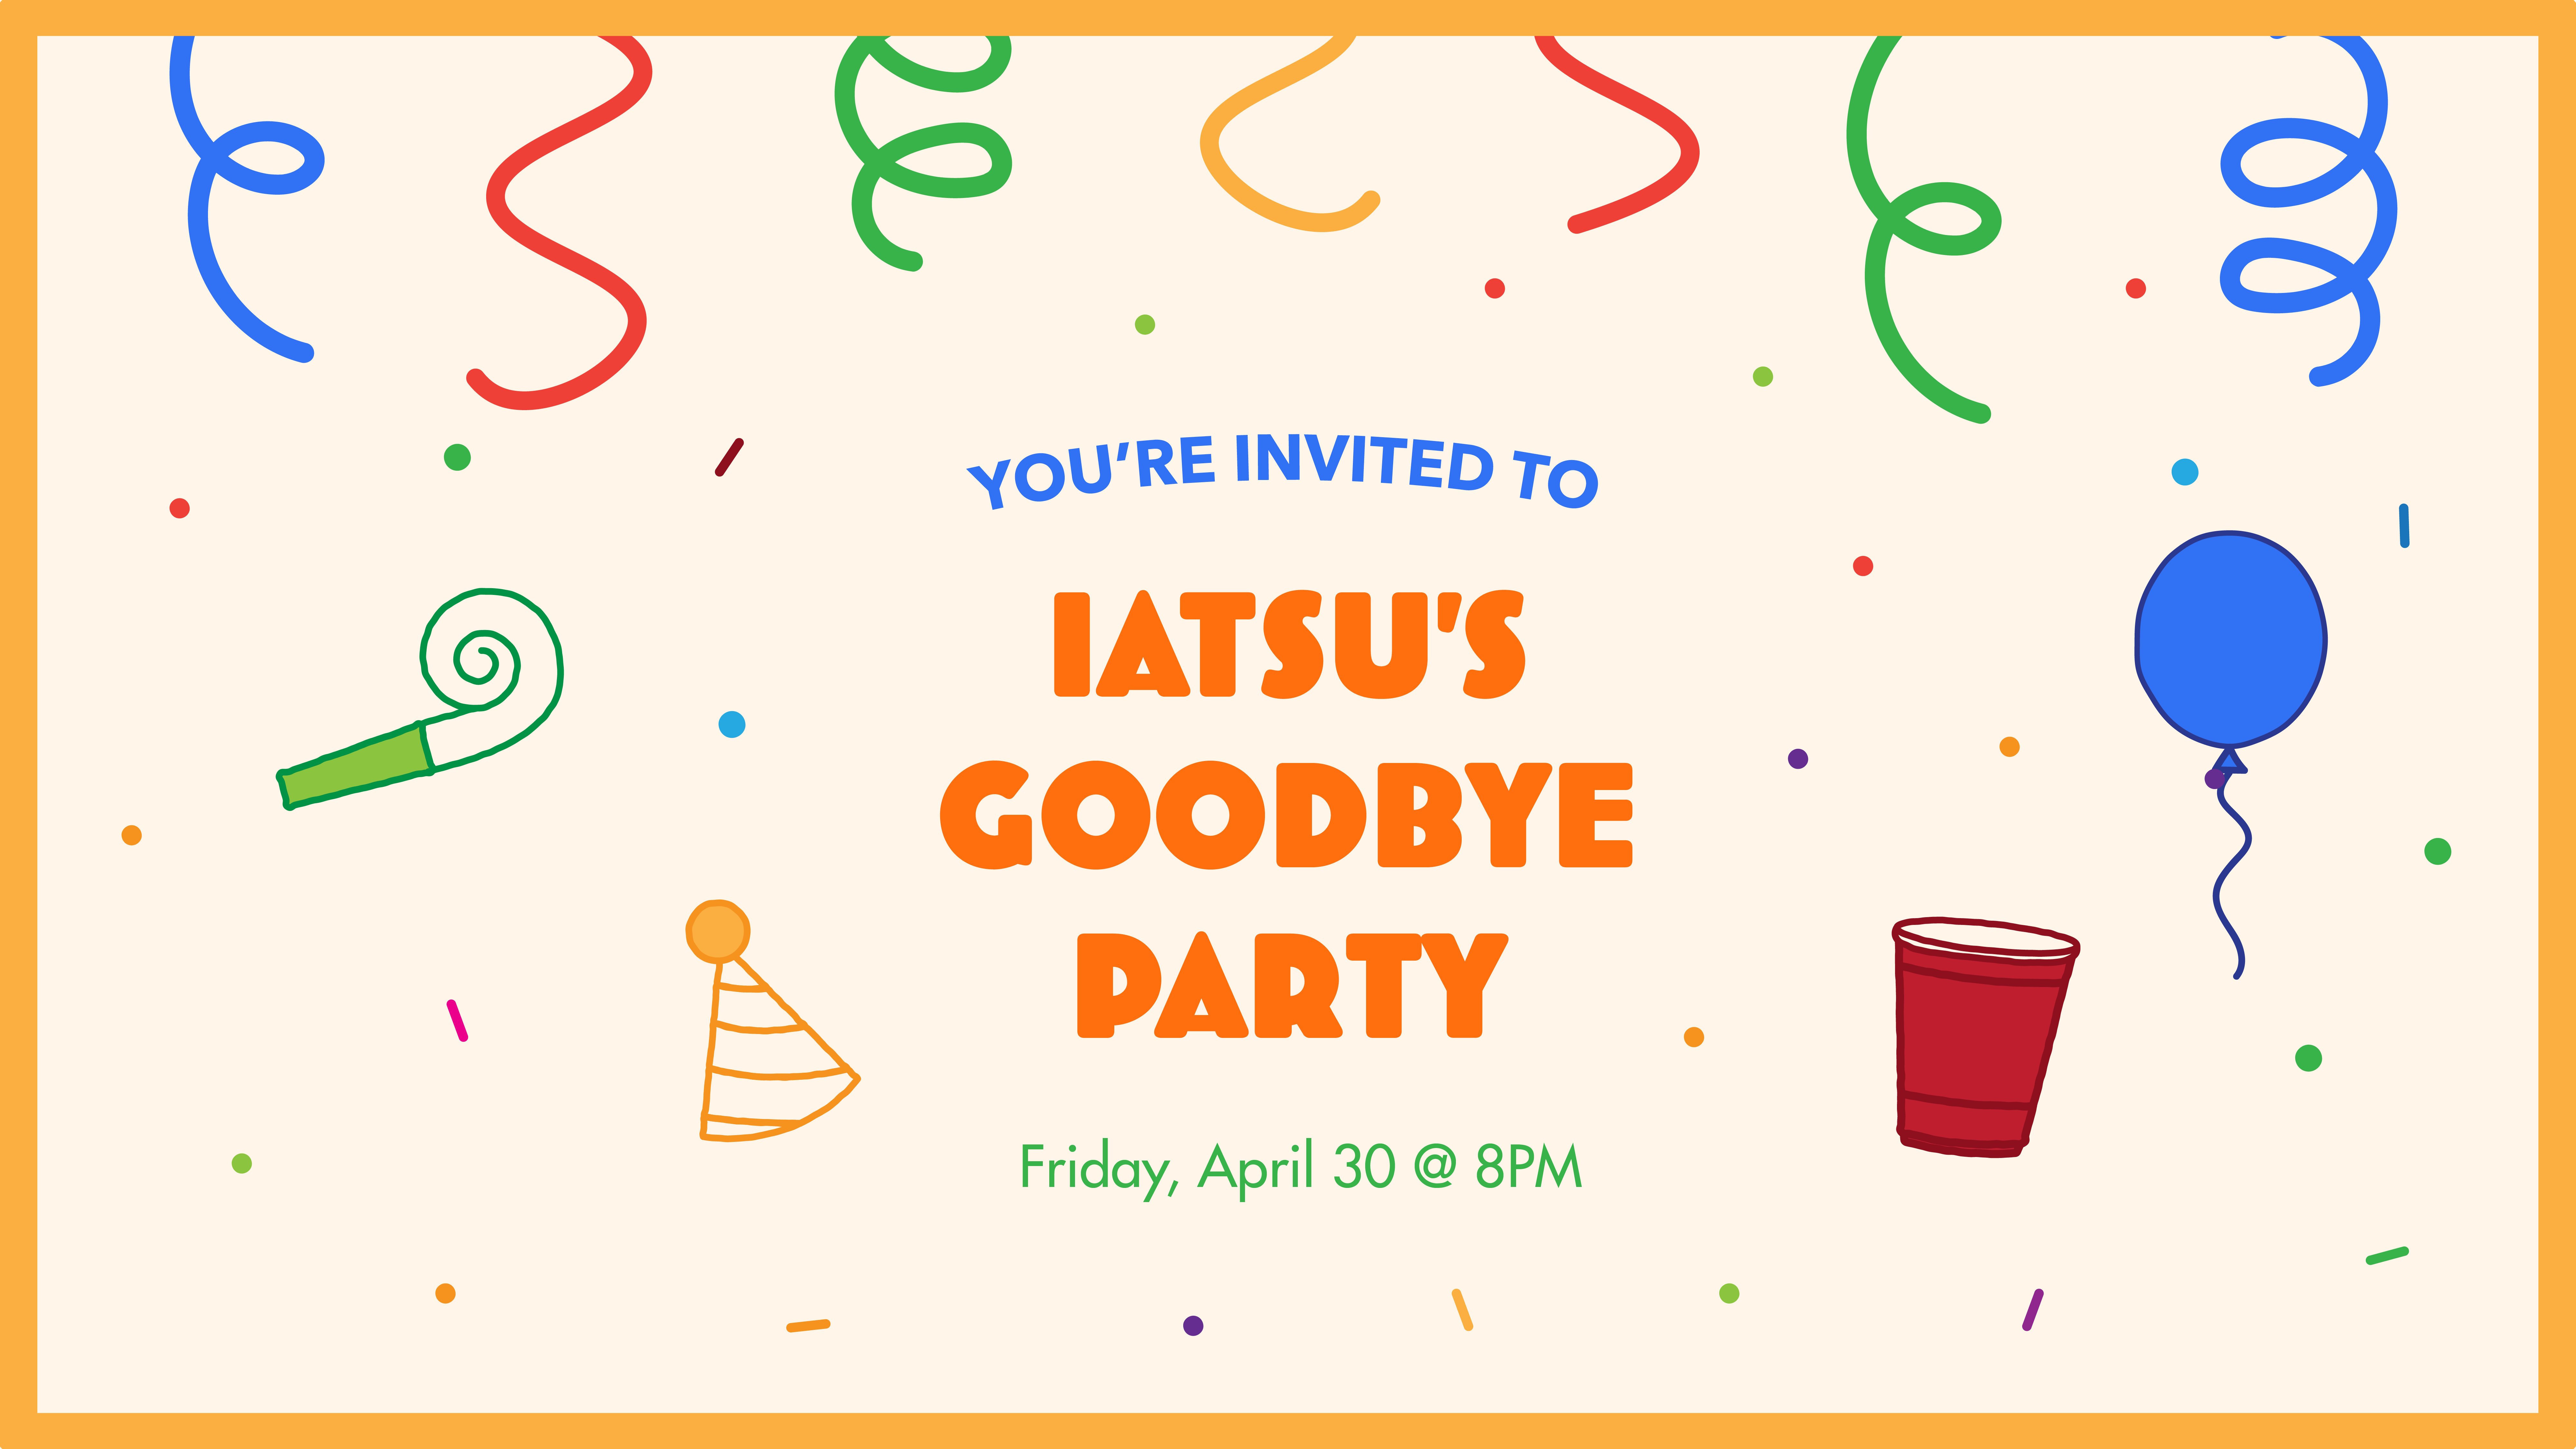 IATSU's Goodbye Party